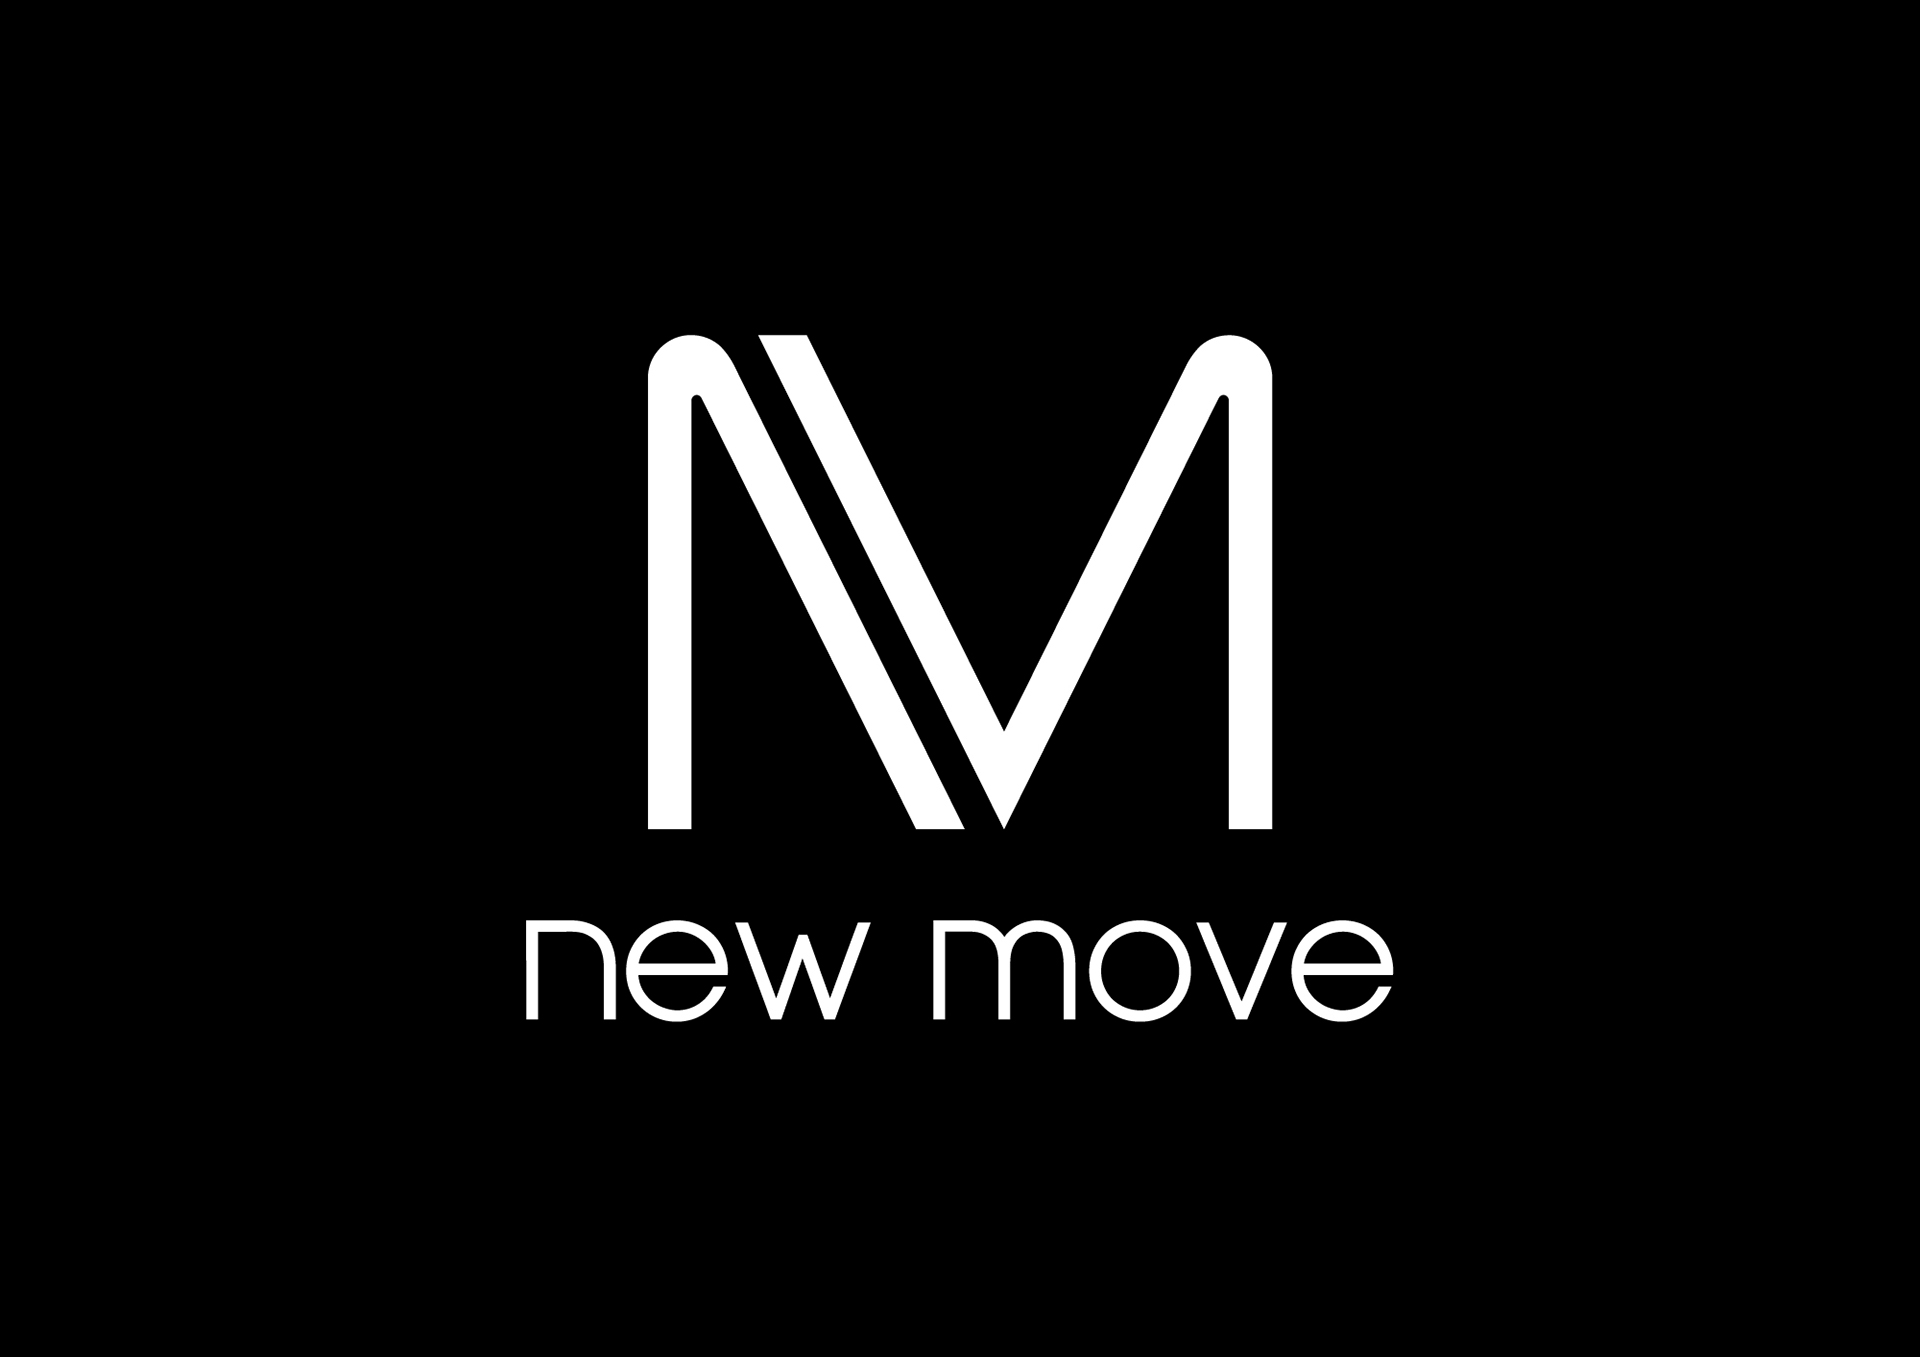 Make new moves